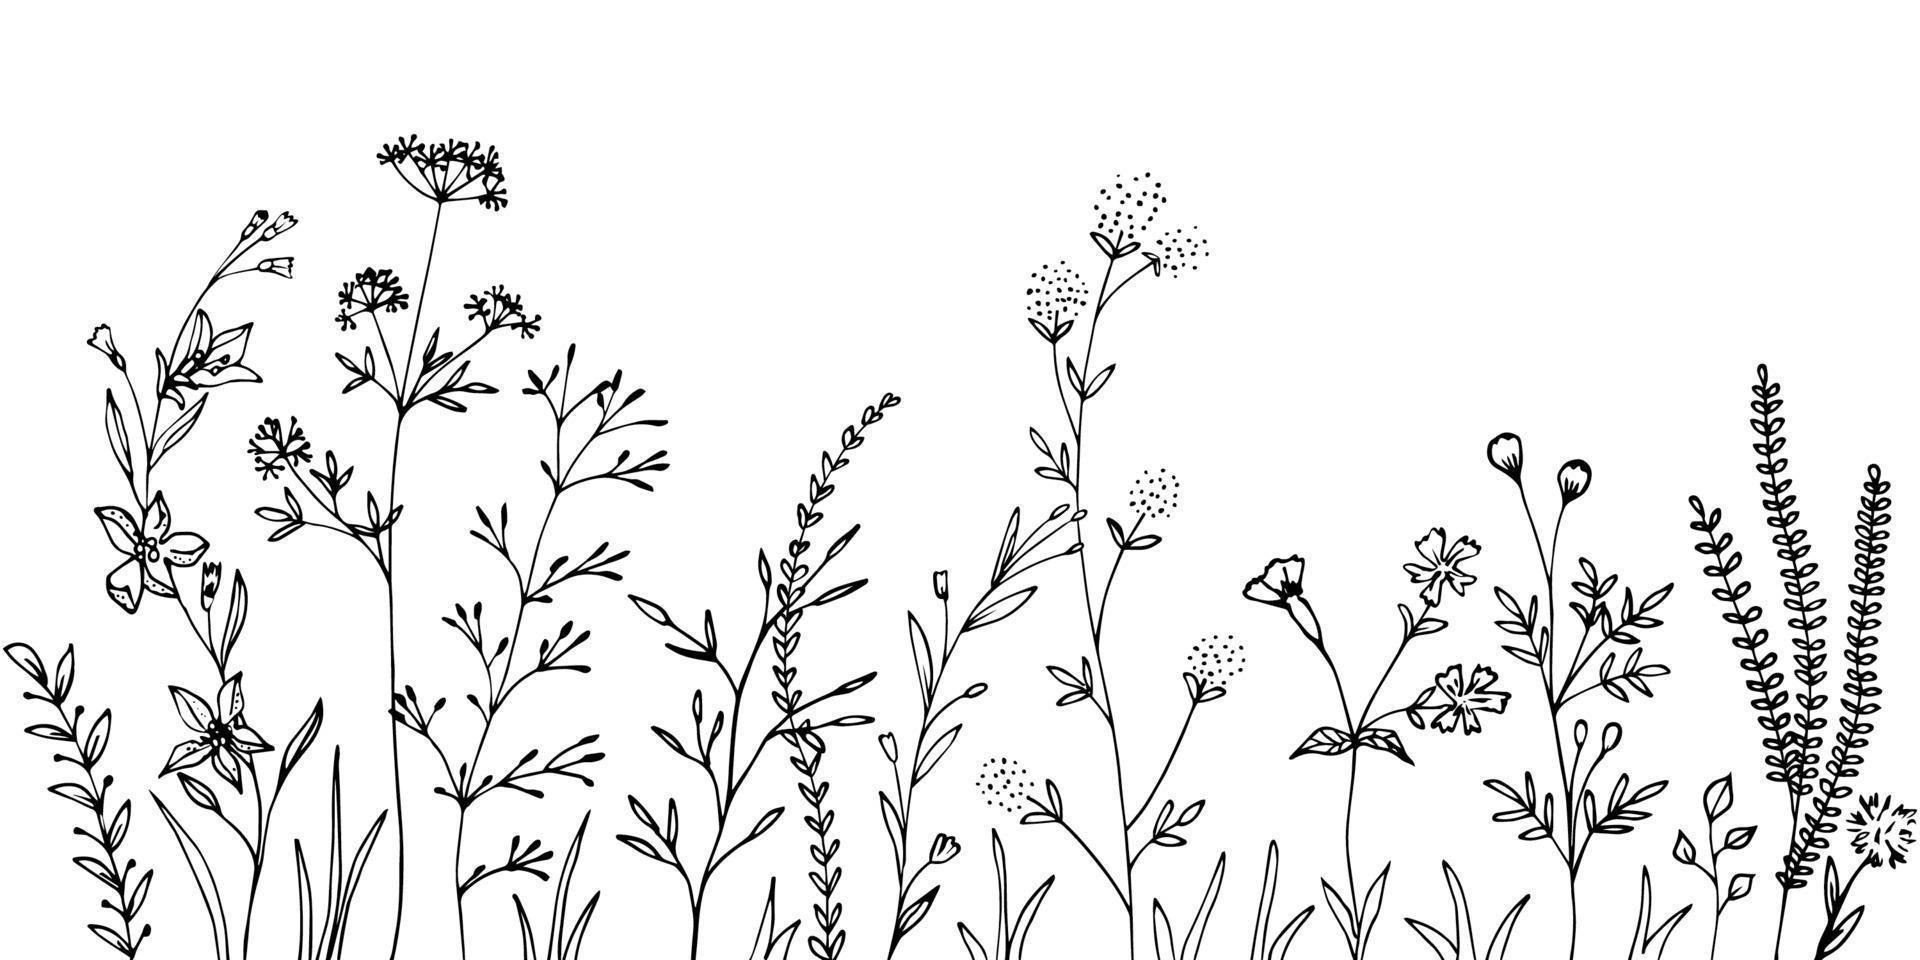 zwarte silhouetten van gras, bloemen en kruiden. vector